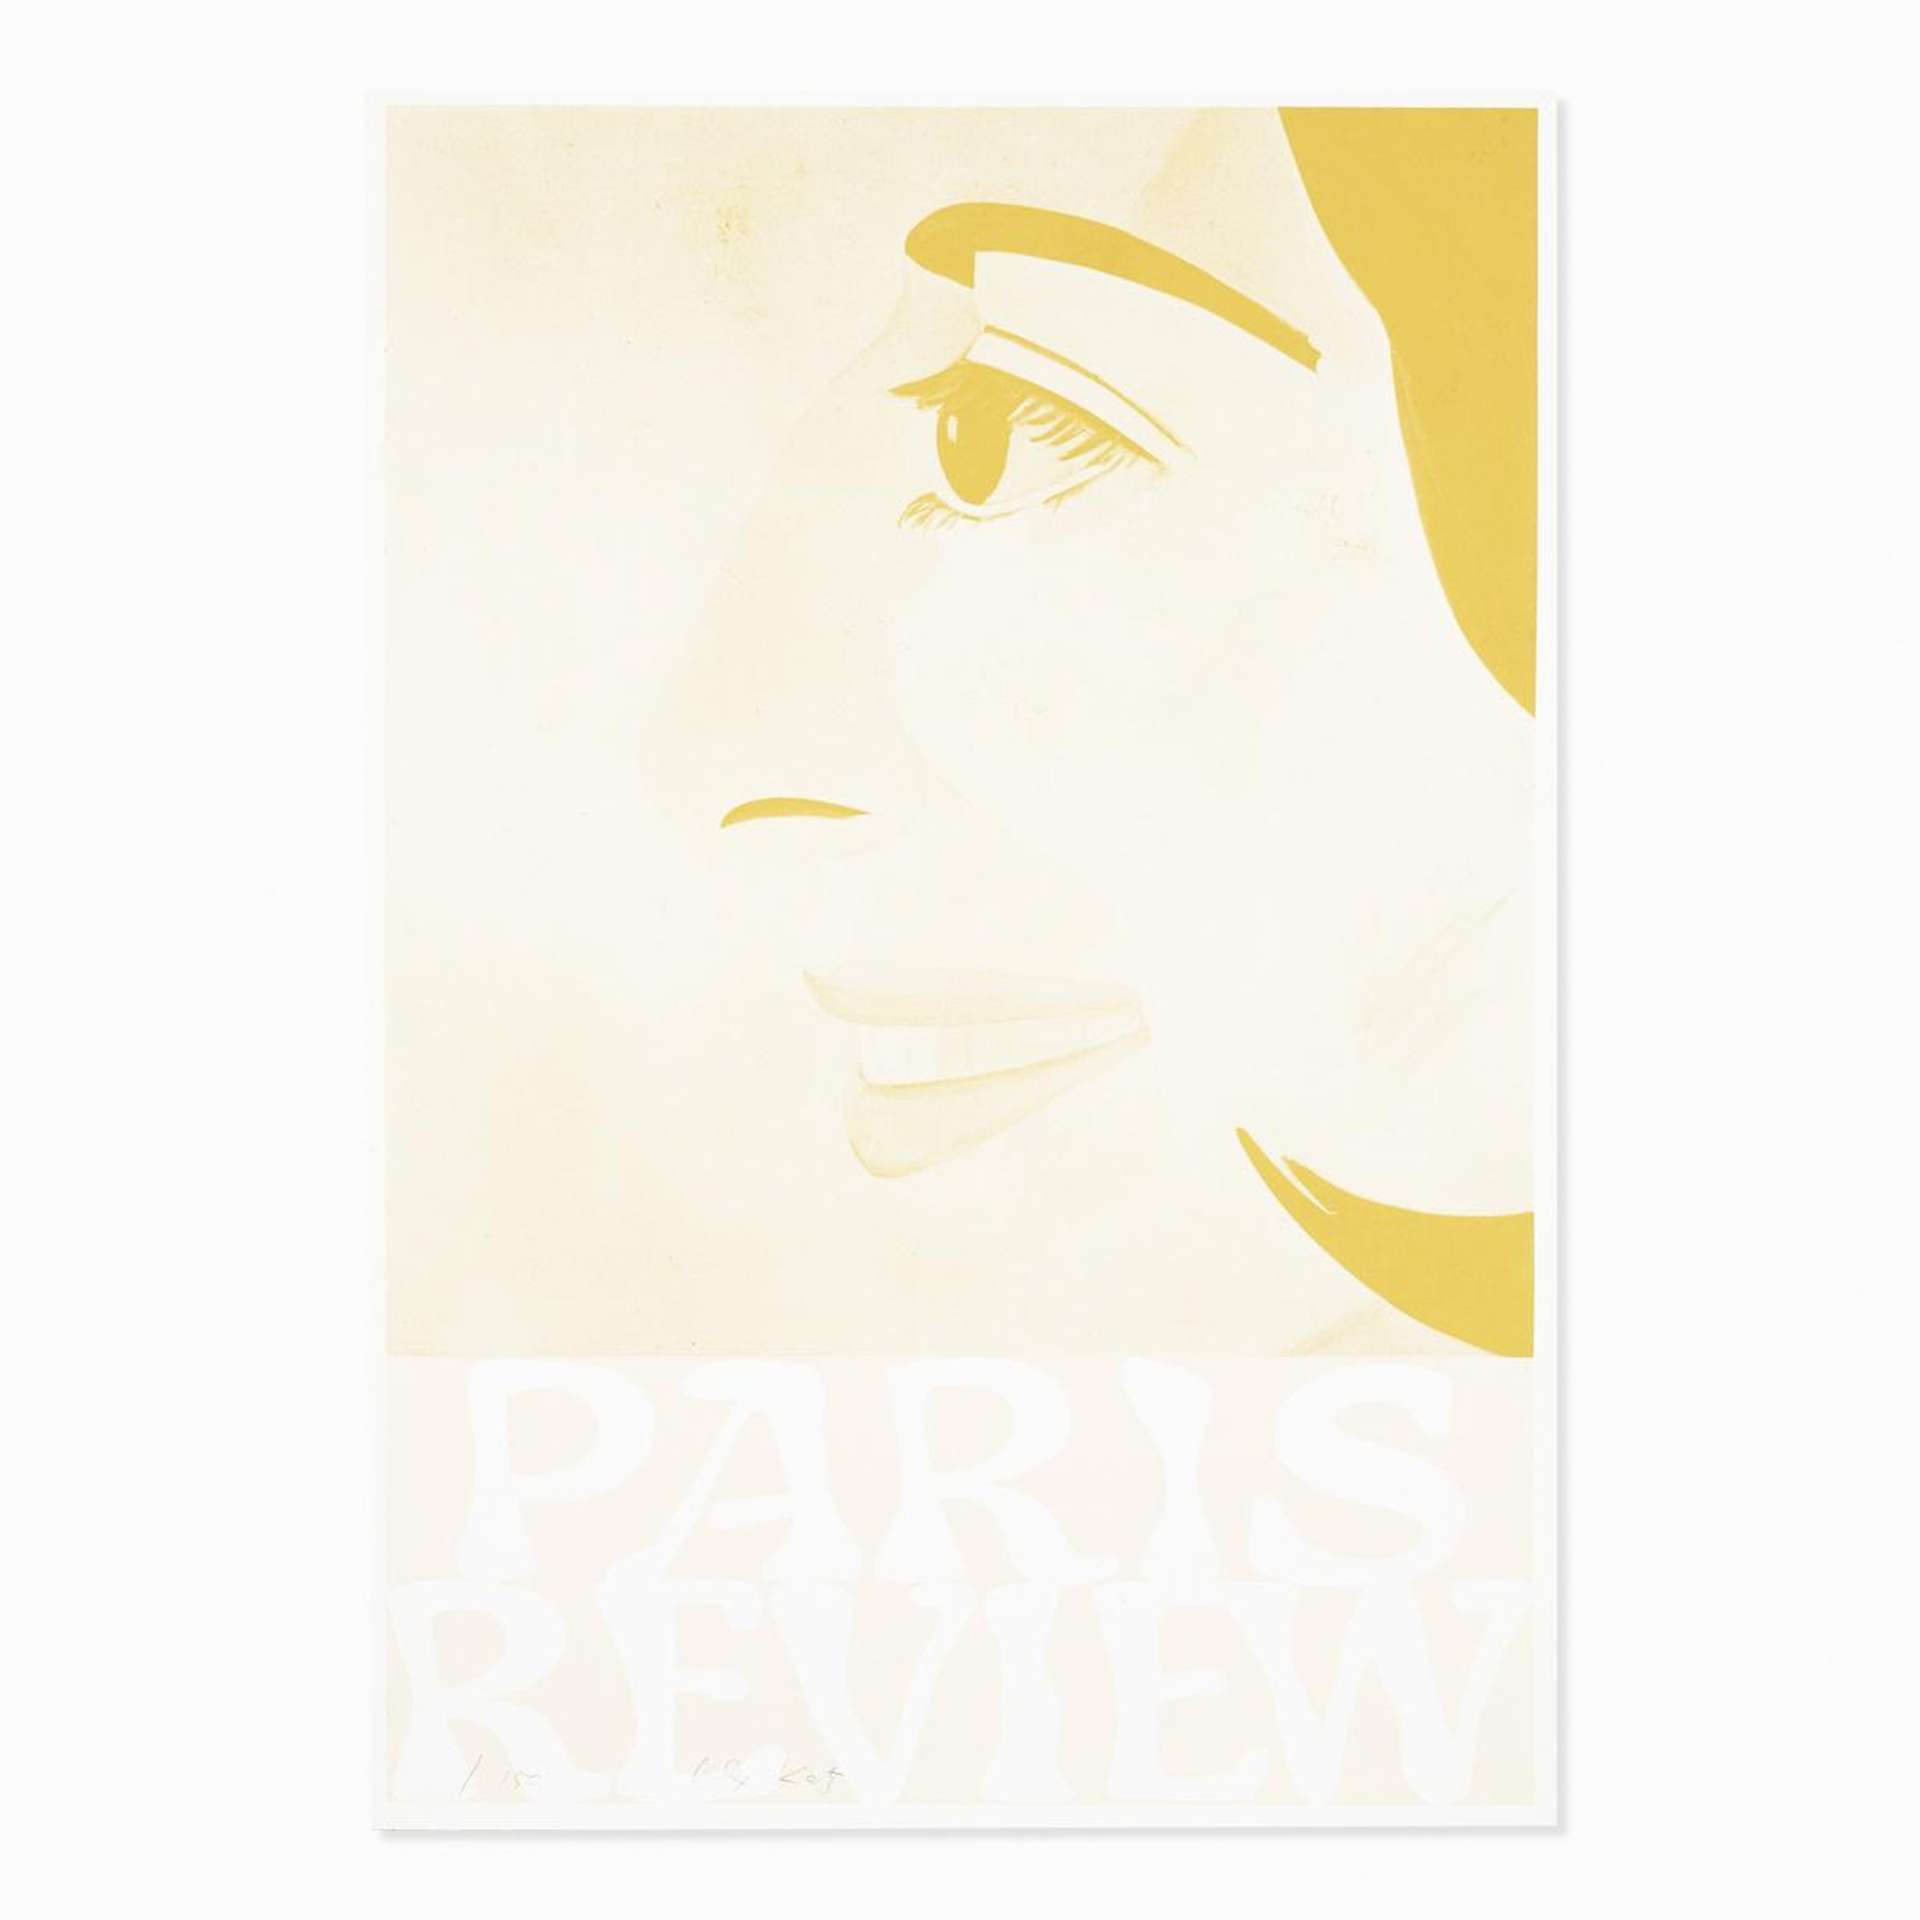 Alex Katz: Paris Review - Signed Print